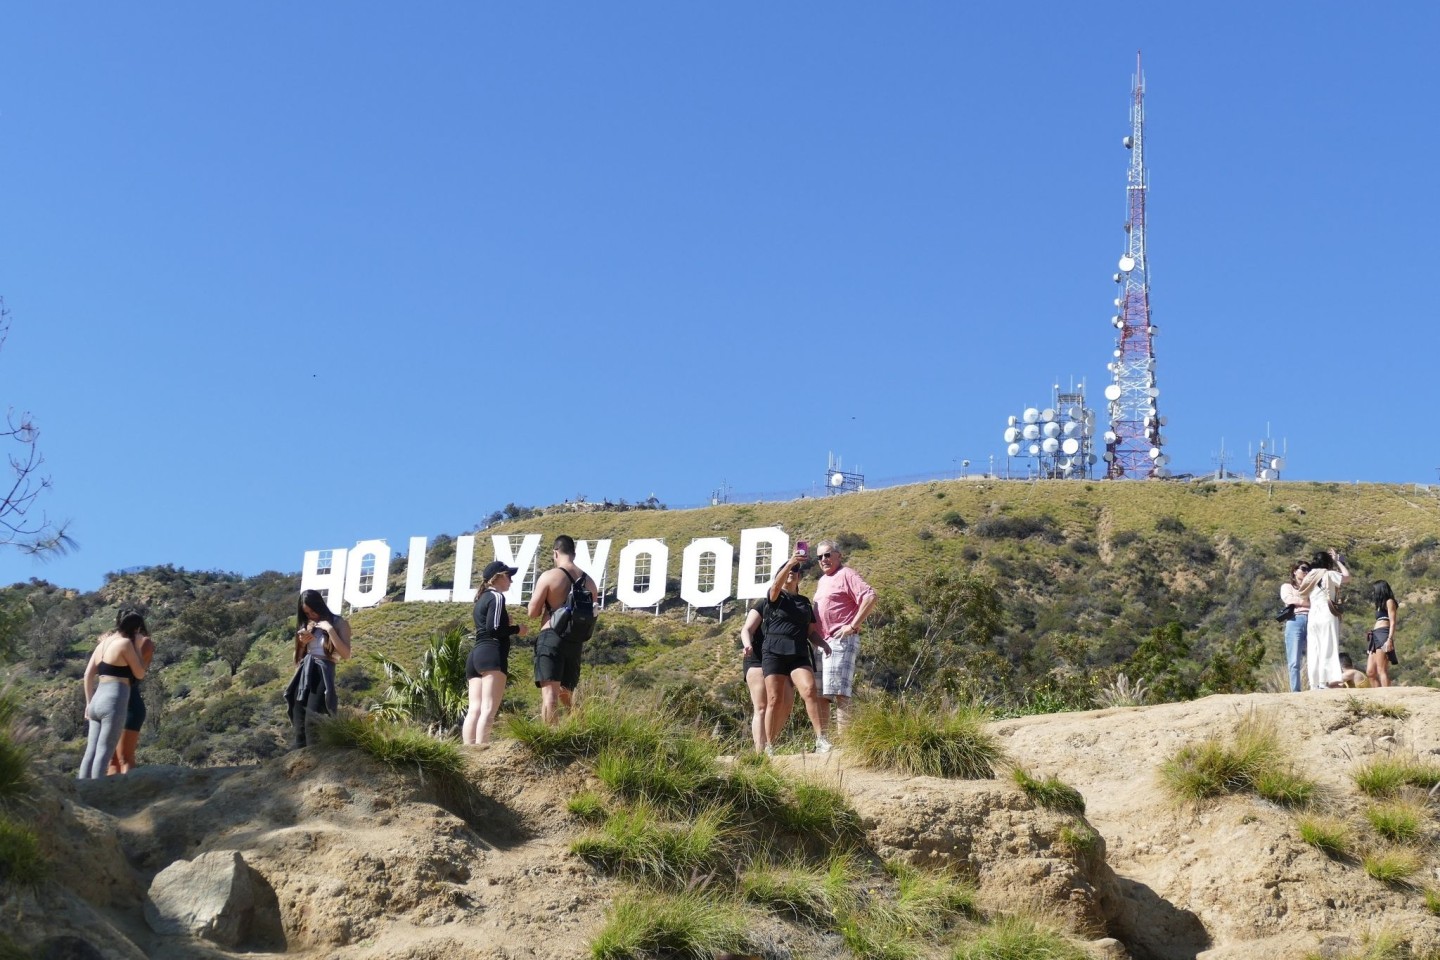 Viele Touristen wollen eine Nahaufnahme vom Hollywood-Schriftzug.